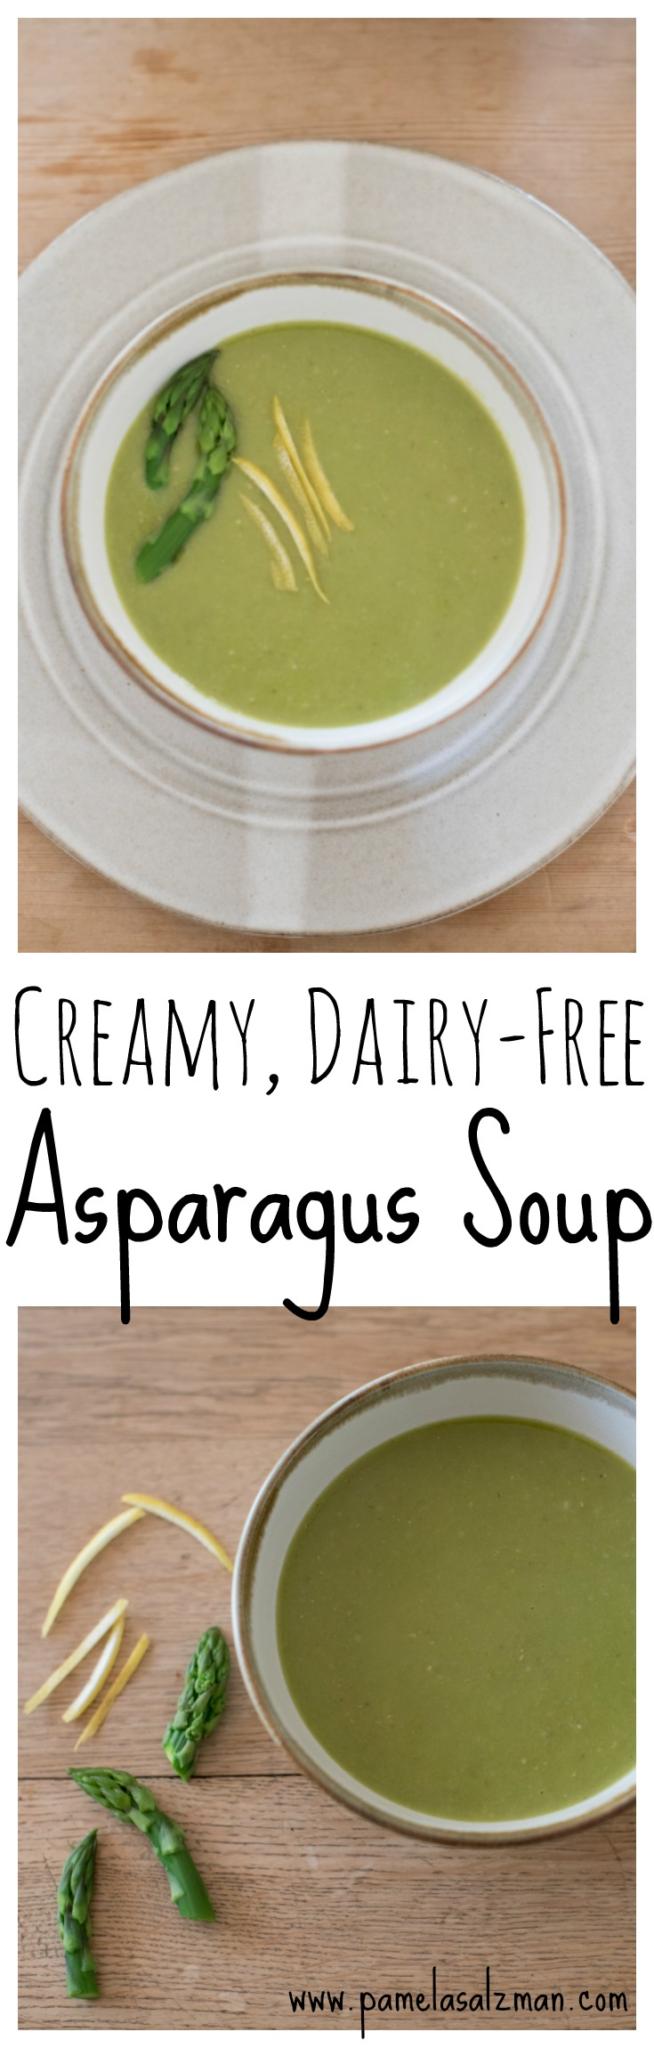 Creamy, Dairy-Free Asparagus Soup | Pamela Salzman